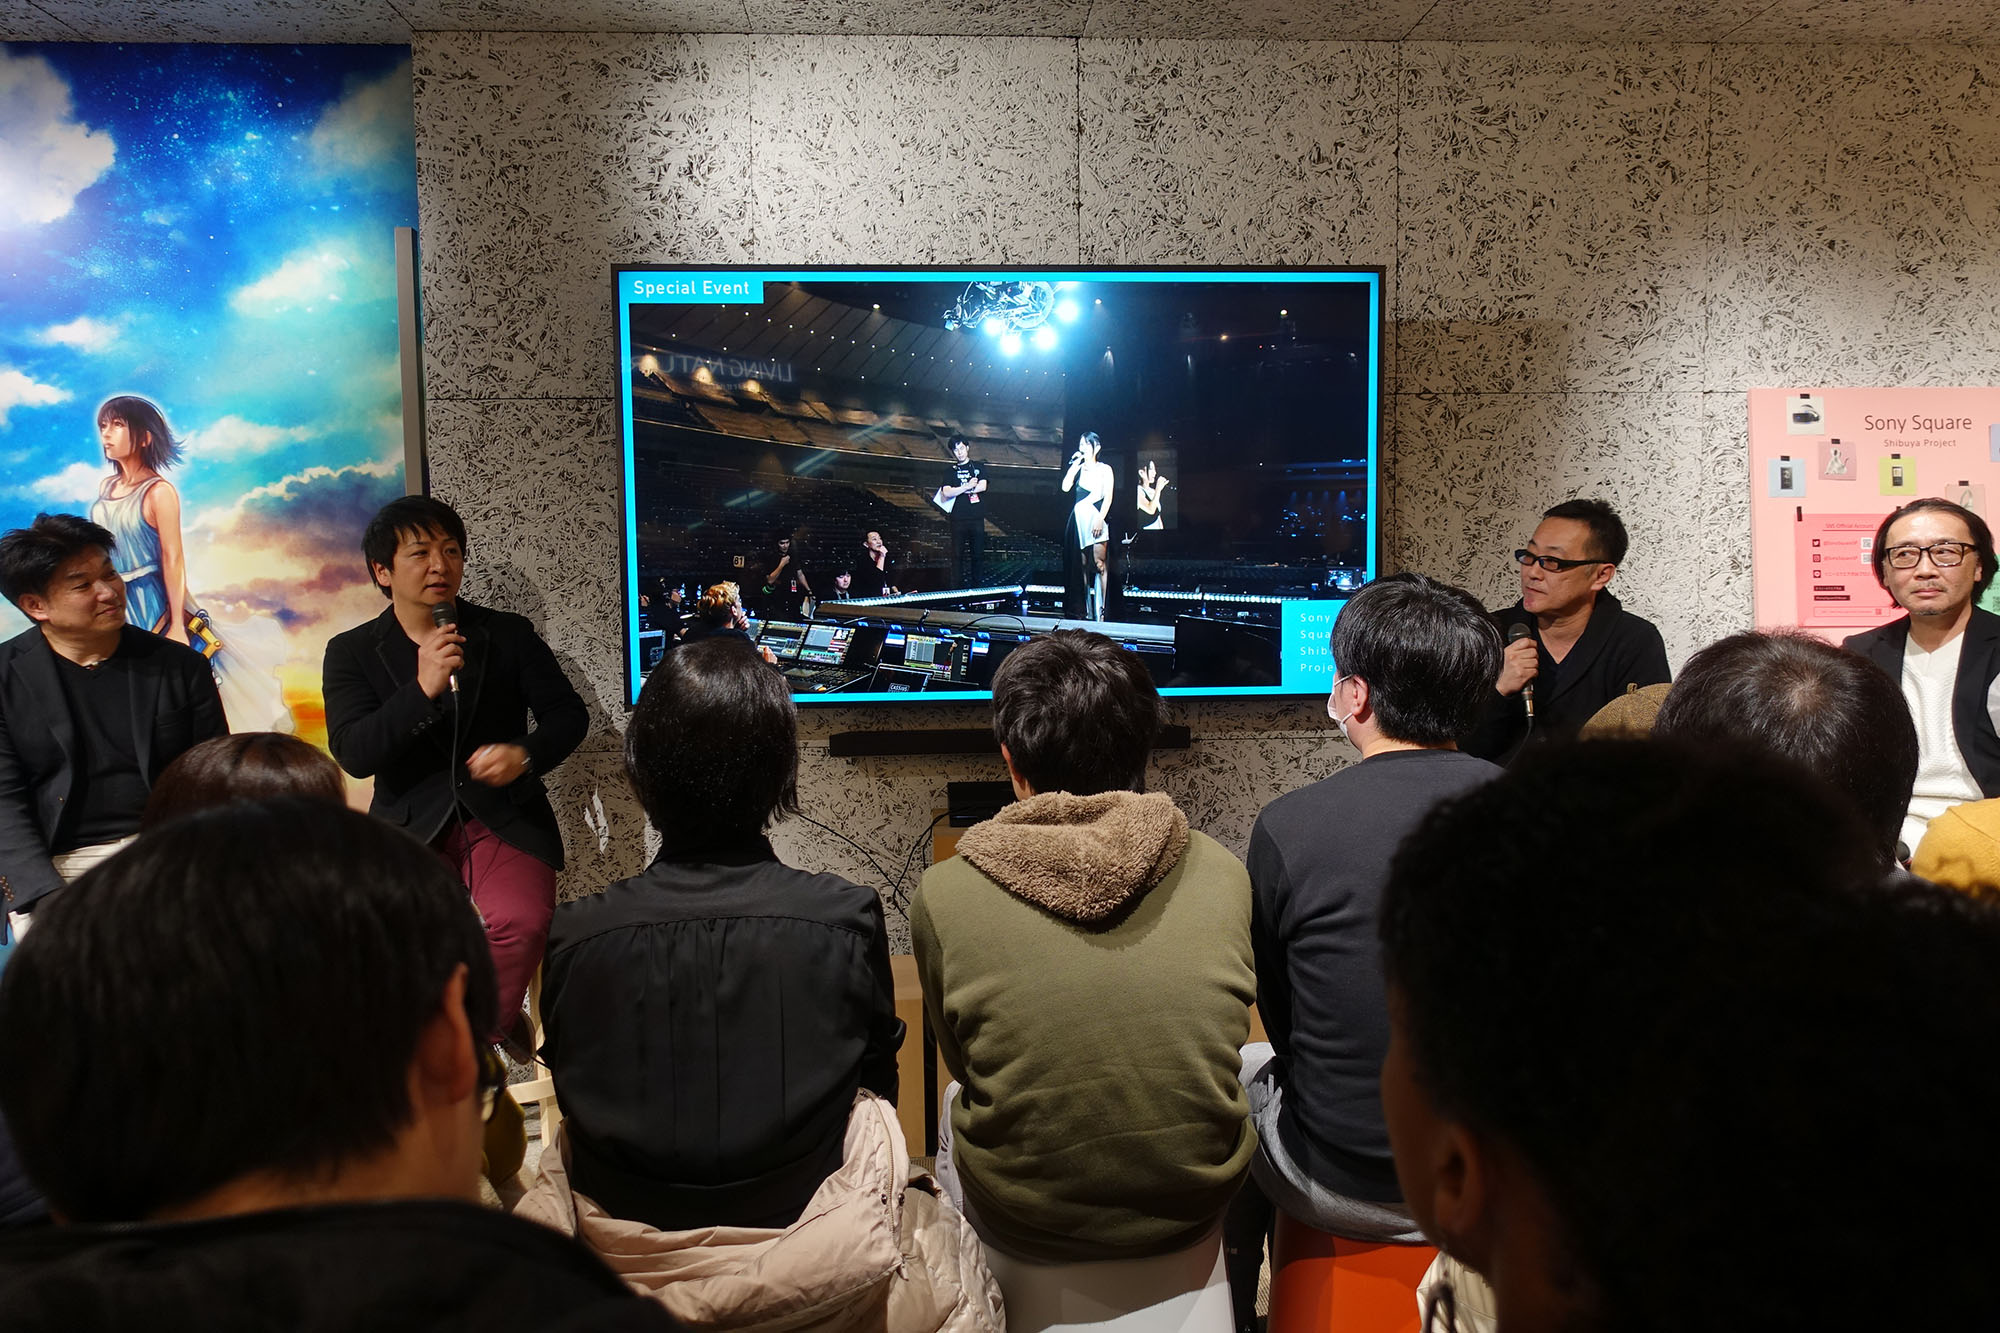 宇多田ヒカルが Kingdom Hearts のテーマソングを熱唱する Playstation4 用ソフトウェア Hikaru Utada Laughter In The Dark Tour 18 光 誓い Vr 体験会と制作トークイベントを開催 Video Salon